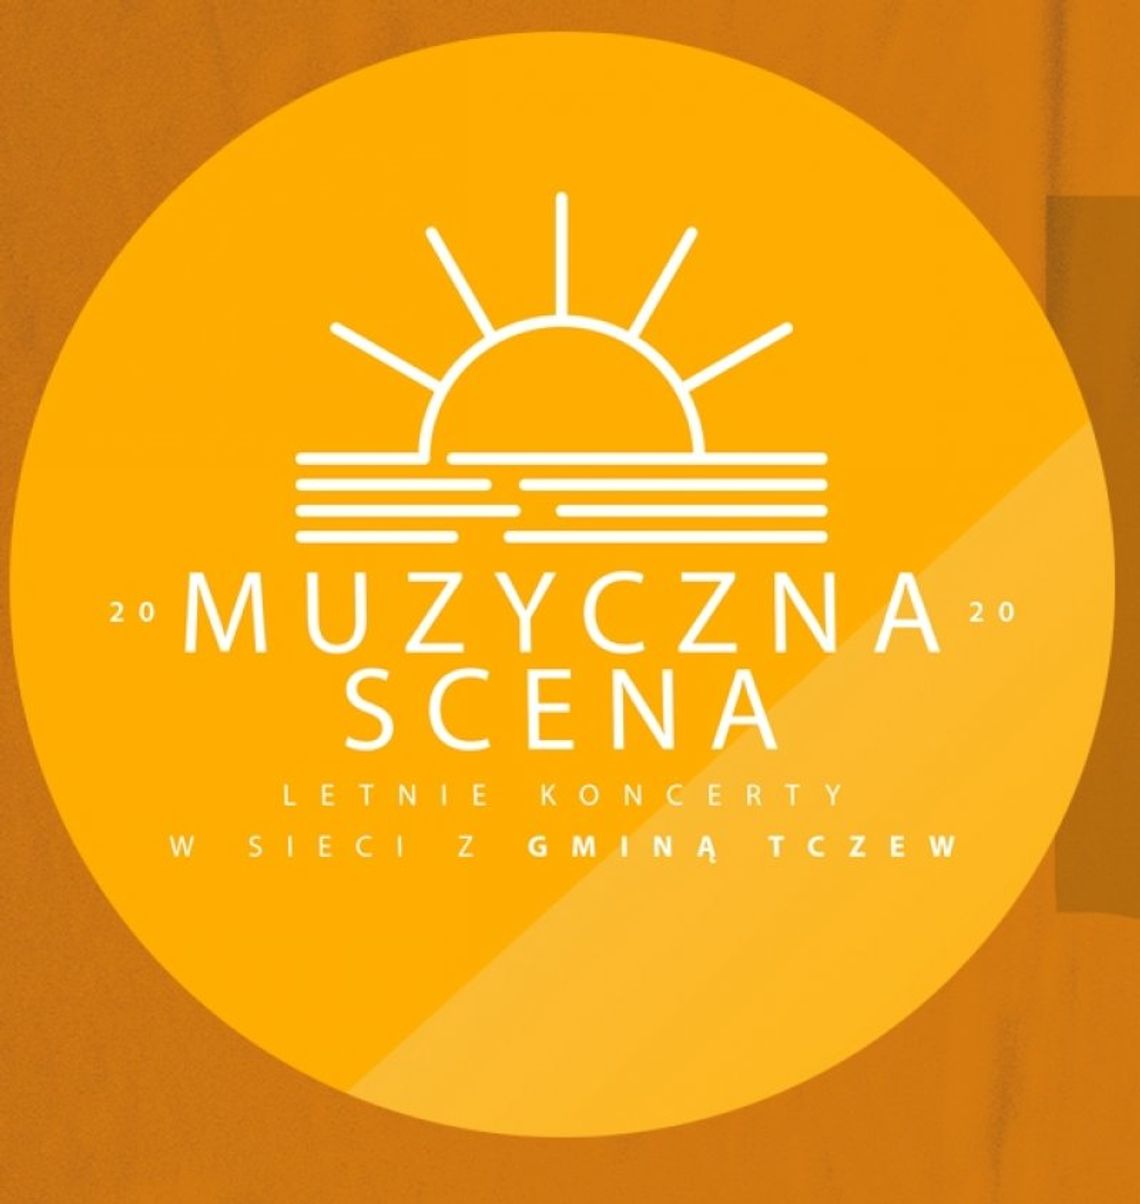 #MuzycznaScena - letnie koncerty w sieci z Gminą Tczew